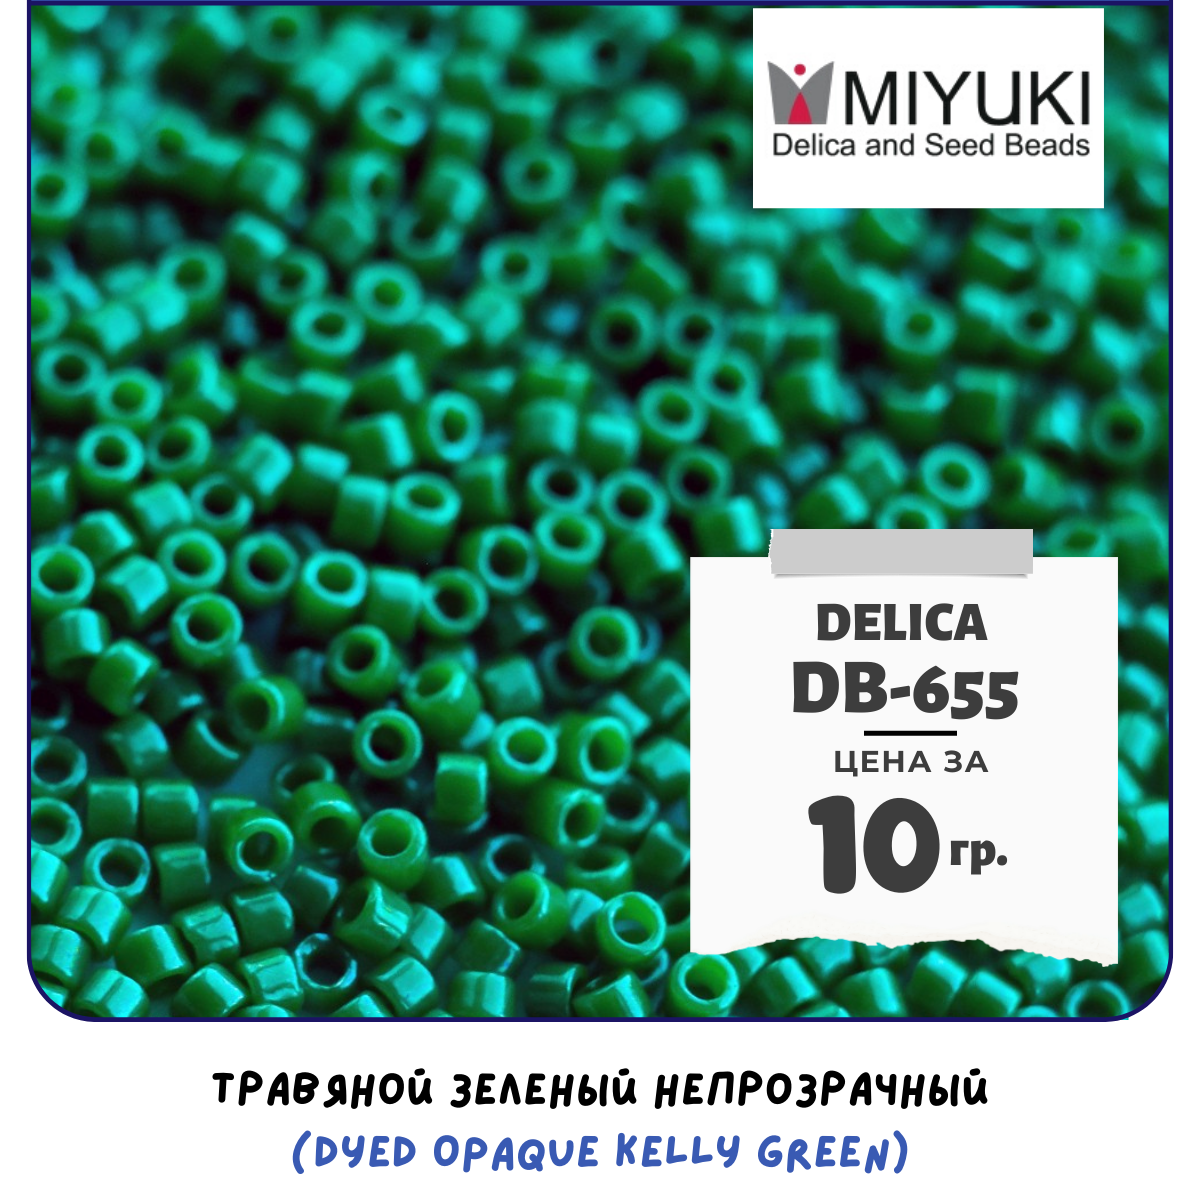 Бисер японский MIYUKI 10 гр Миюки цилиндрический Delica Делика 11/0 размер 11 DB-655 травяной зеленый непрозрачный (Dyed Opaque Kelly Green)